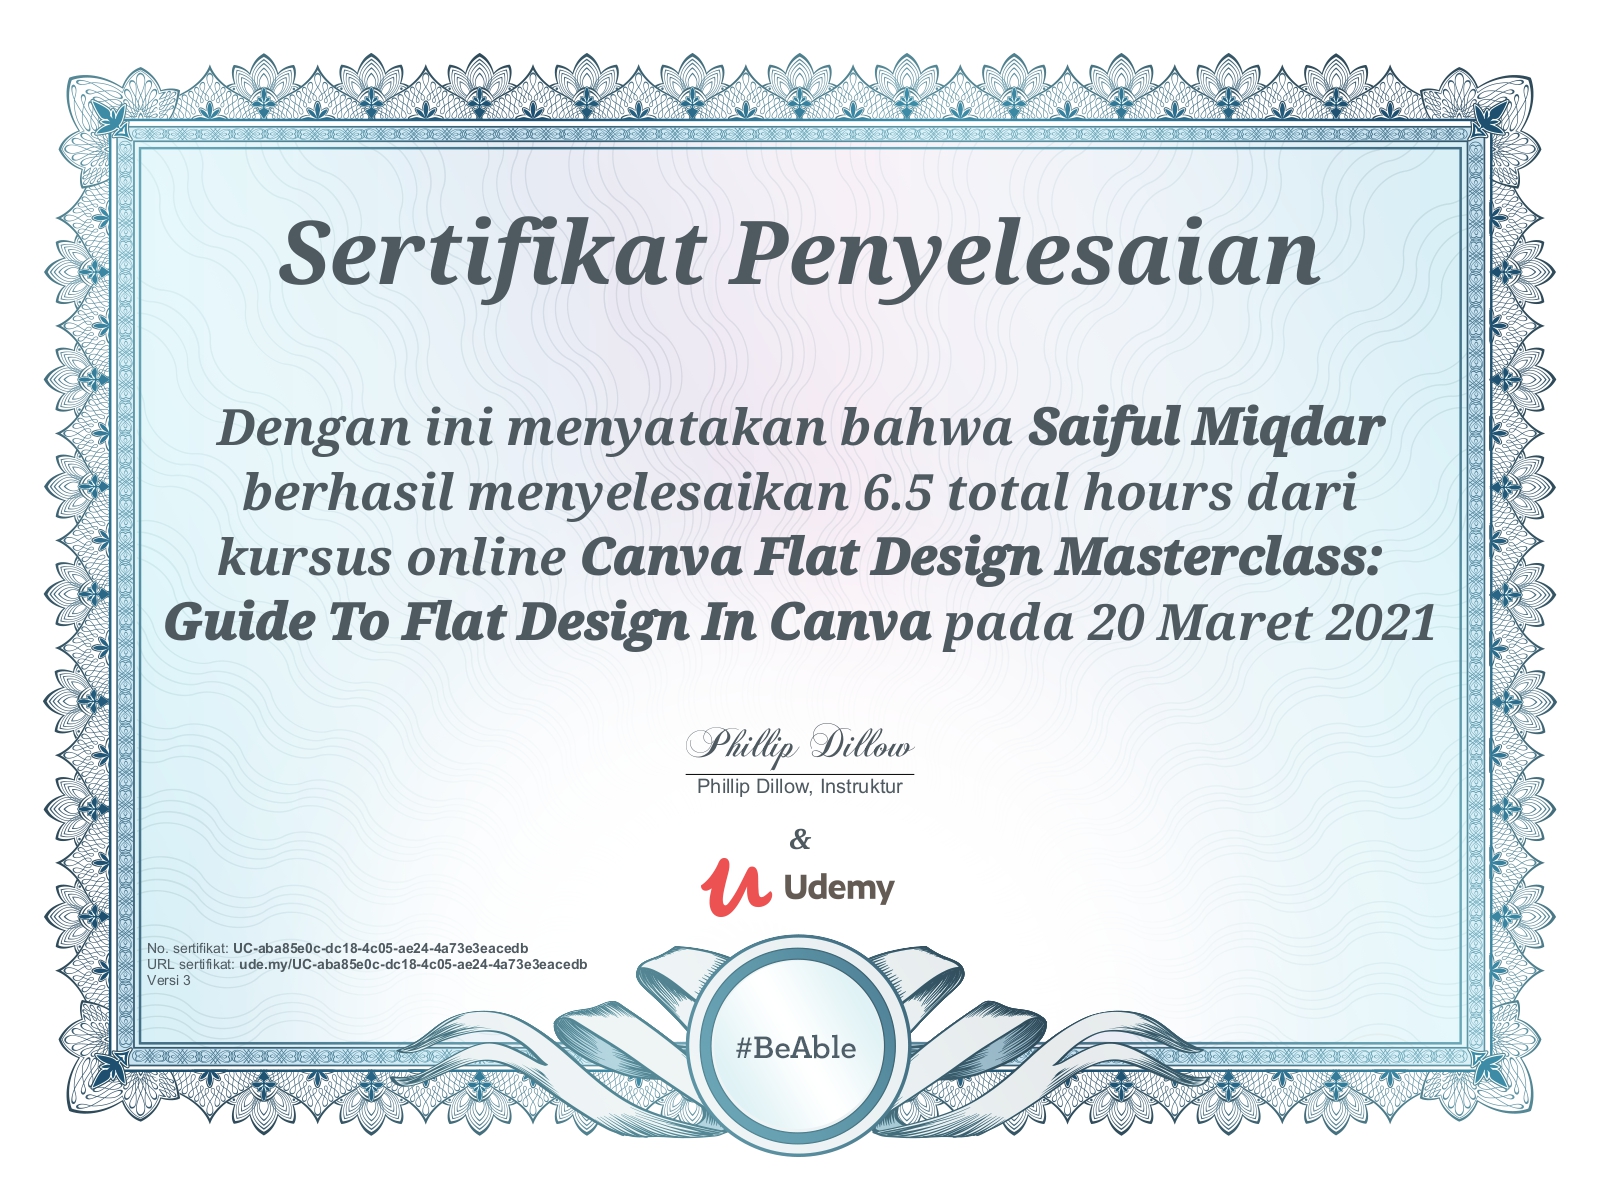 Canva Flat Design Masterclass Guide To Flat Design In Canva.jpg